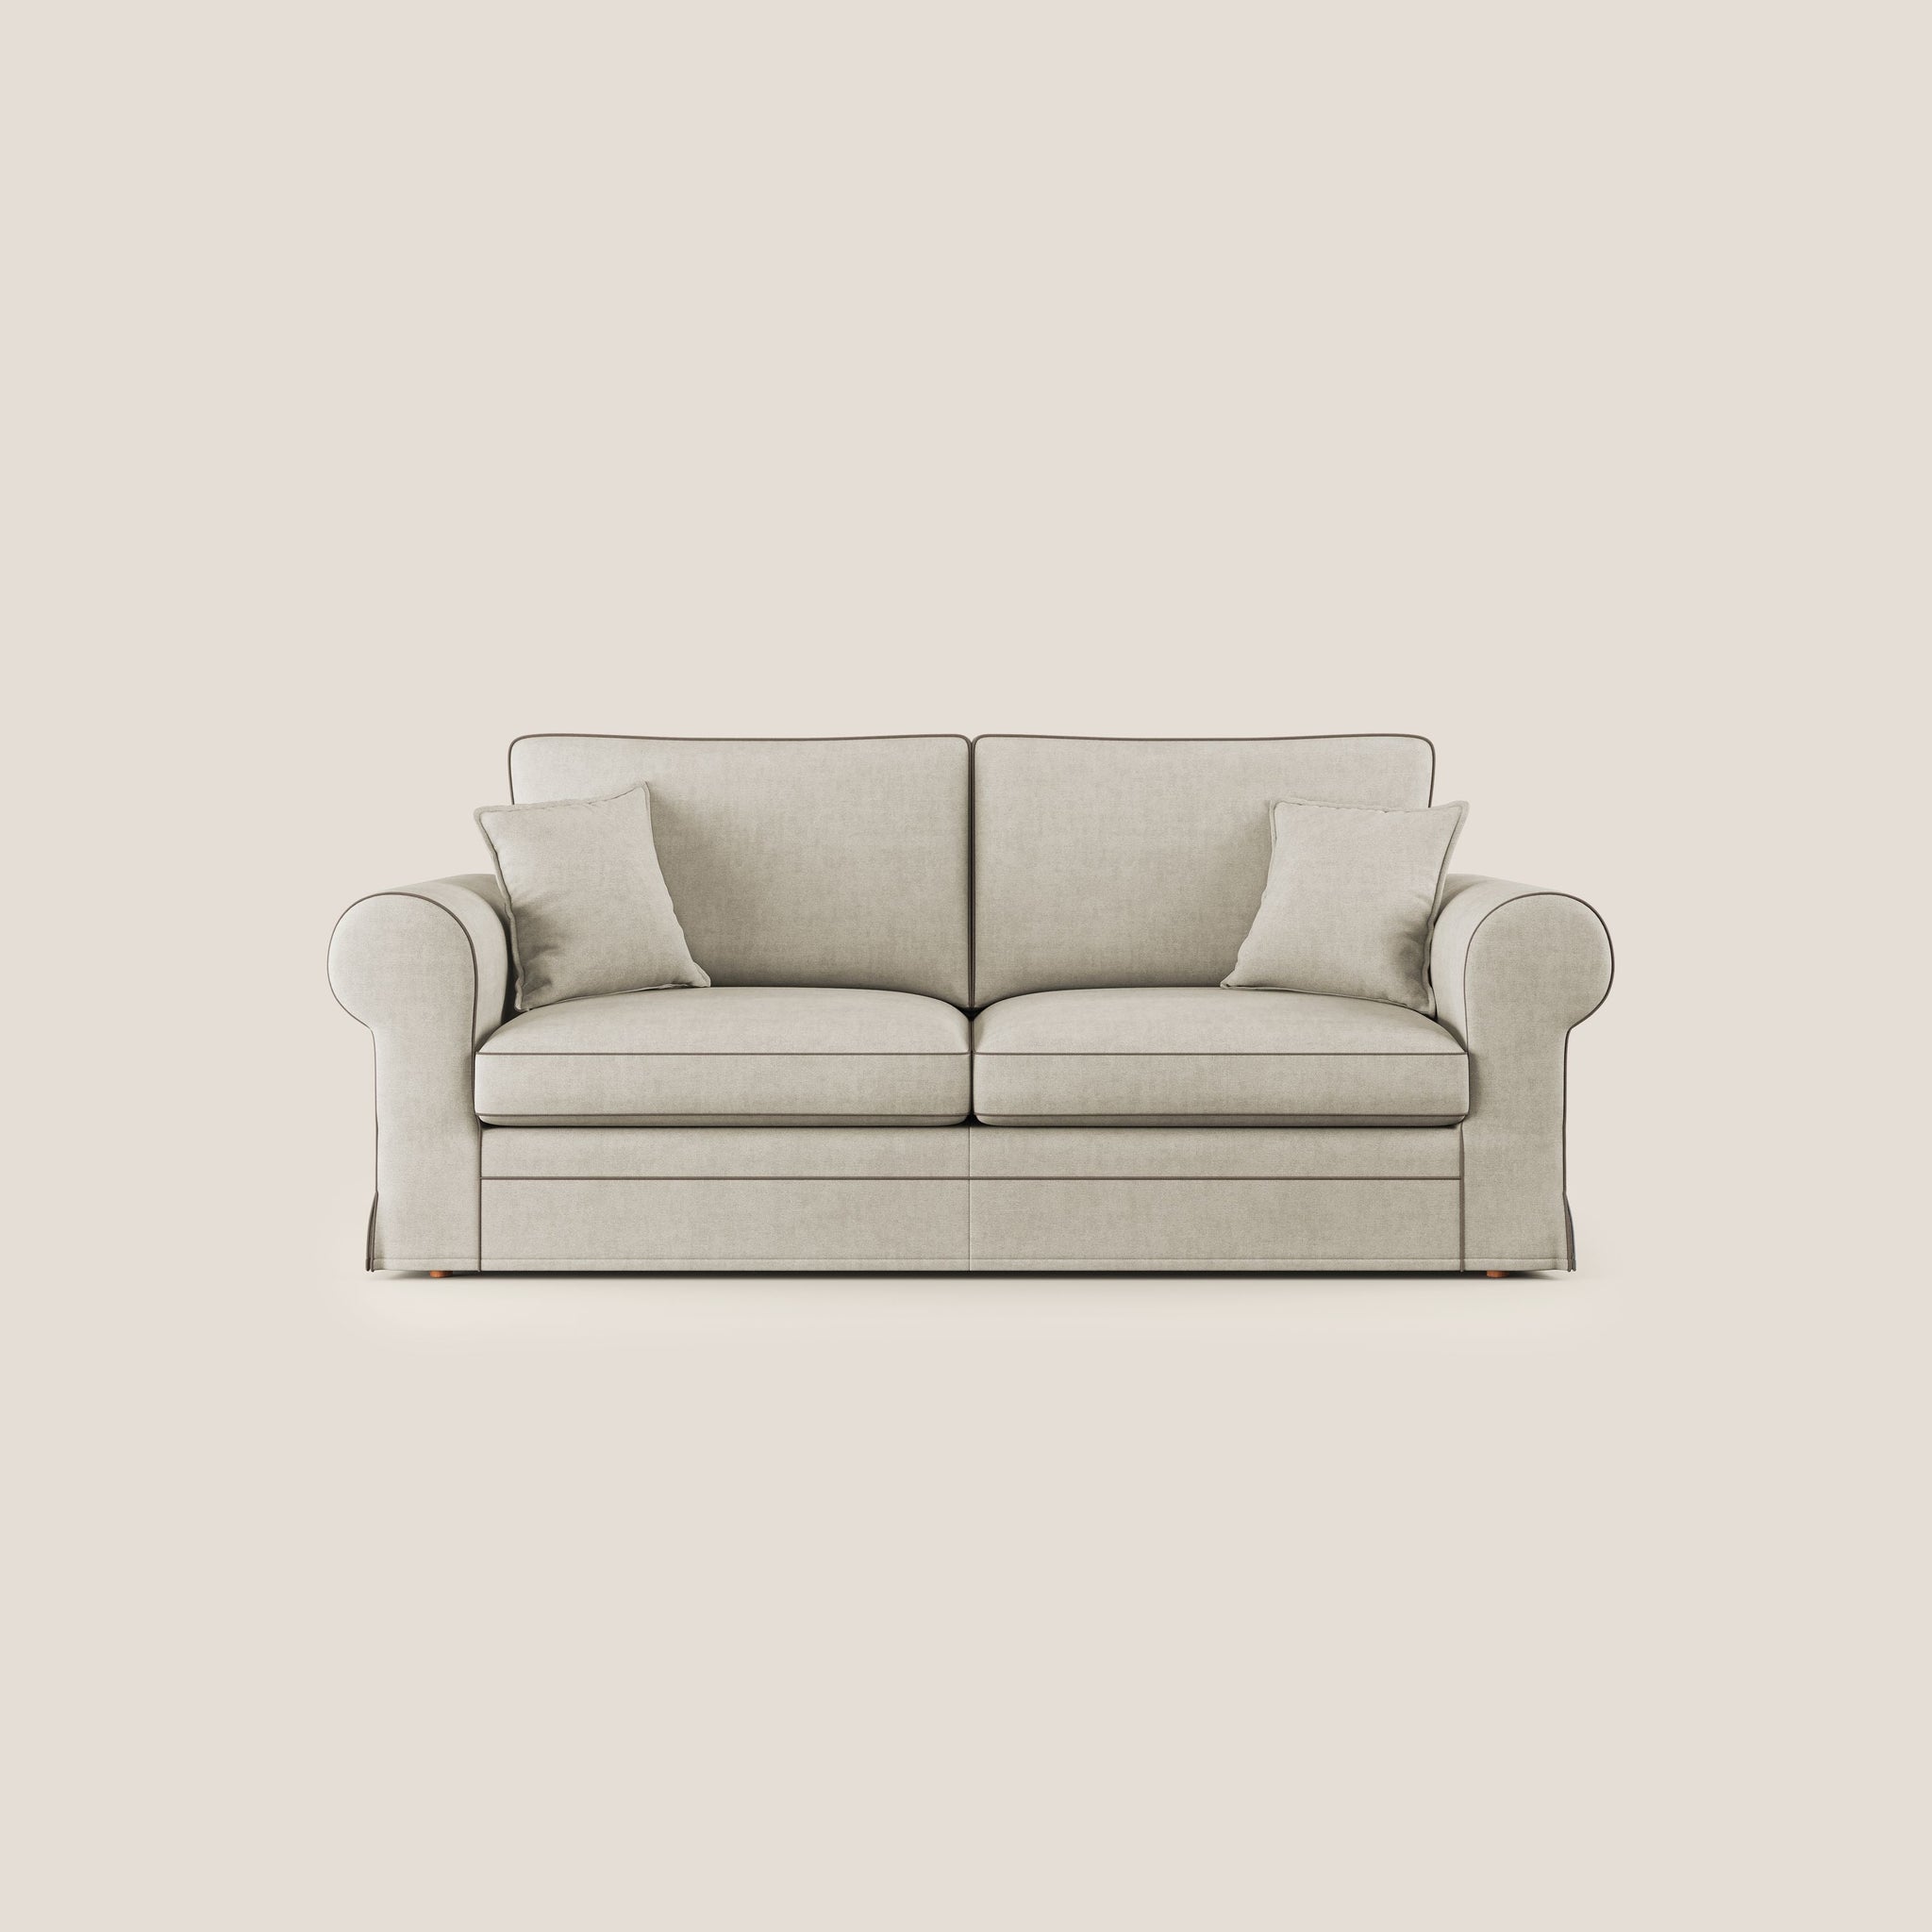 Lady Klassisches zweifarbiges Sofa mit Gänsedaunen aus wasserfestem Stoff T02